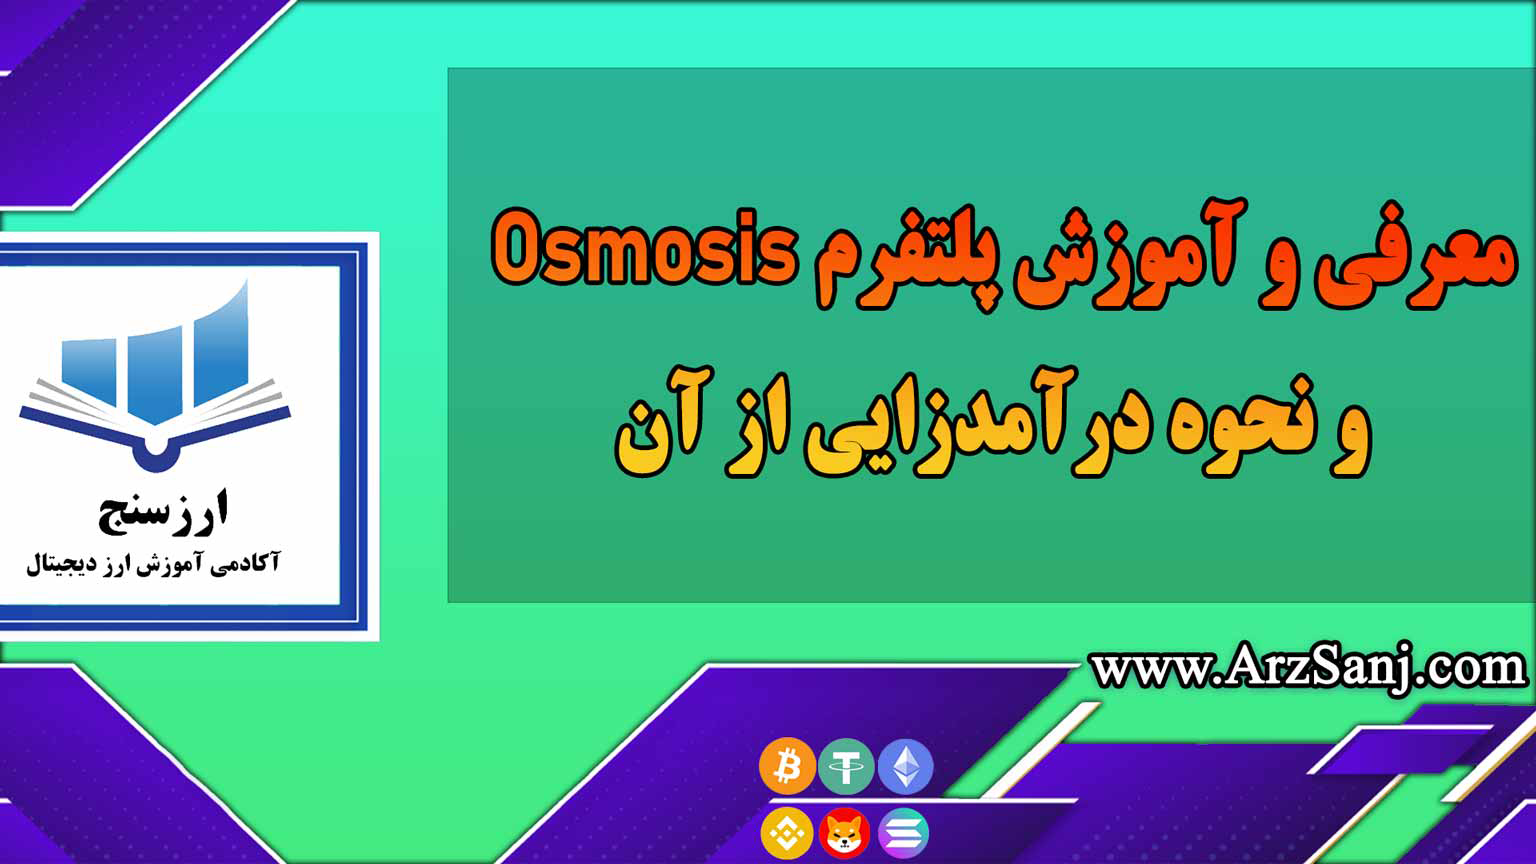 معرفی و آموزش پلتفرم Osmosis و نحوه درآمدزایی از آن